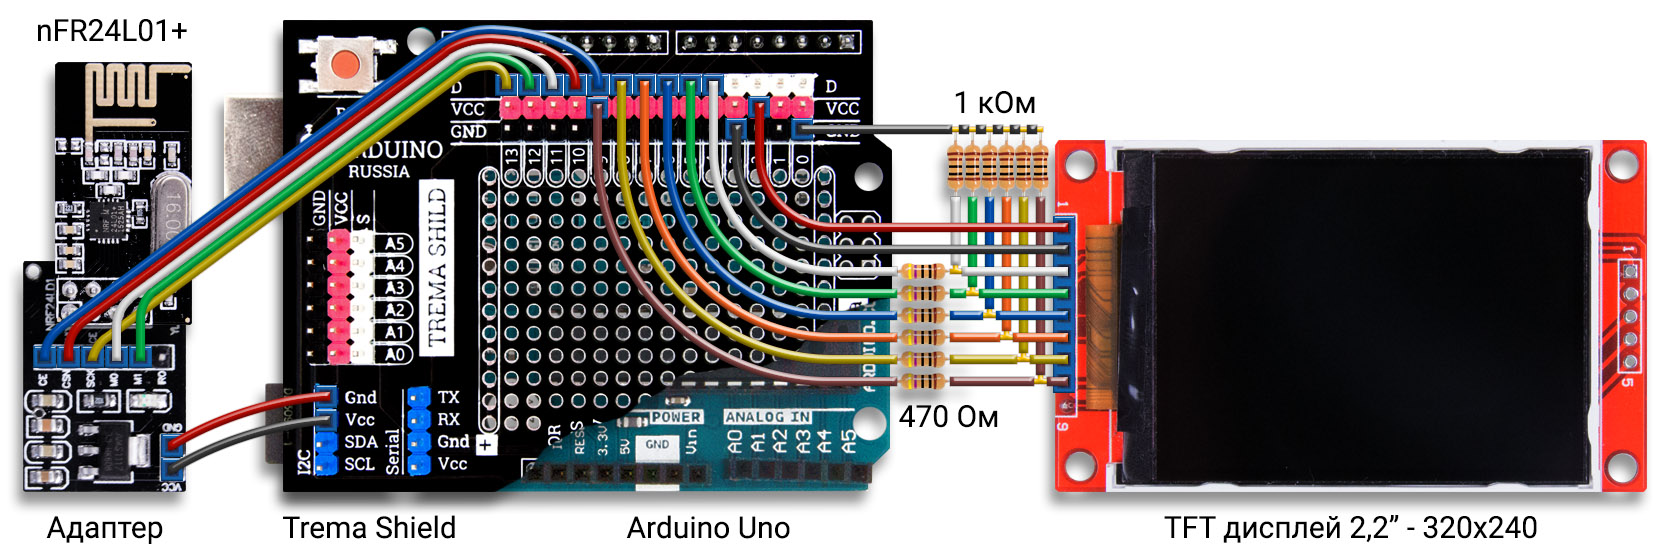 Сканер радиочастот на Arduino Uno